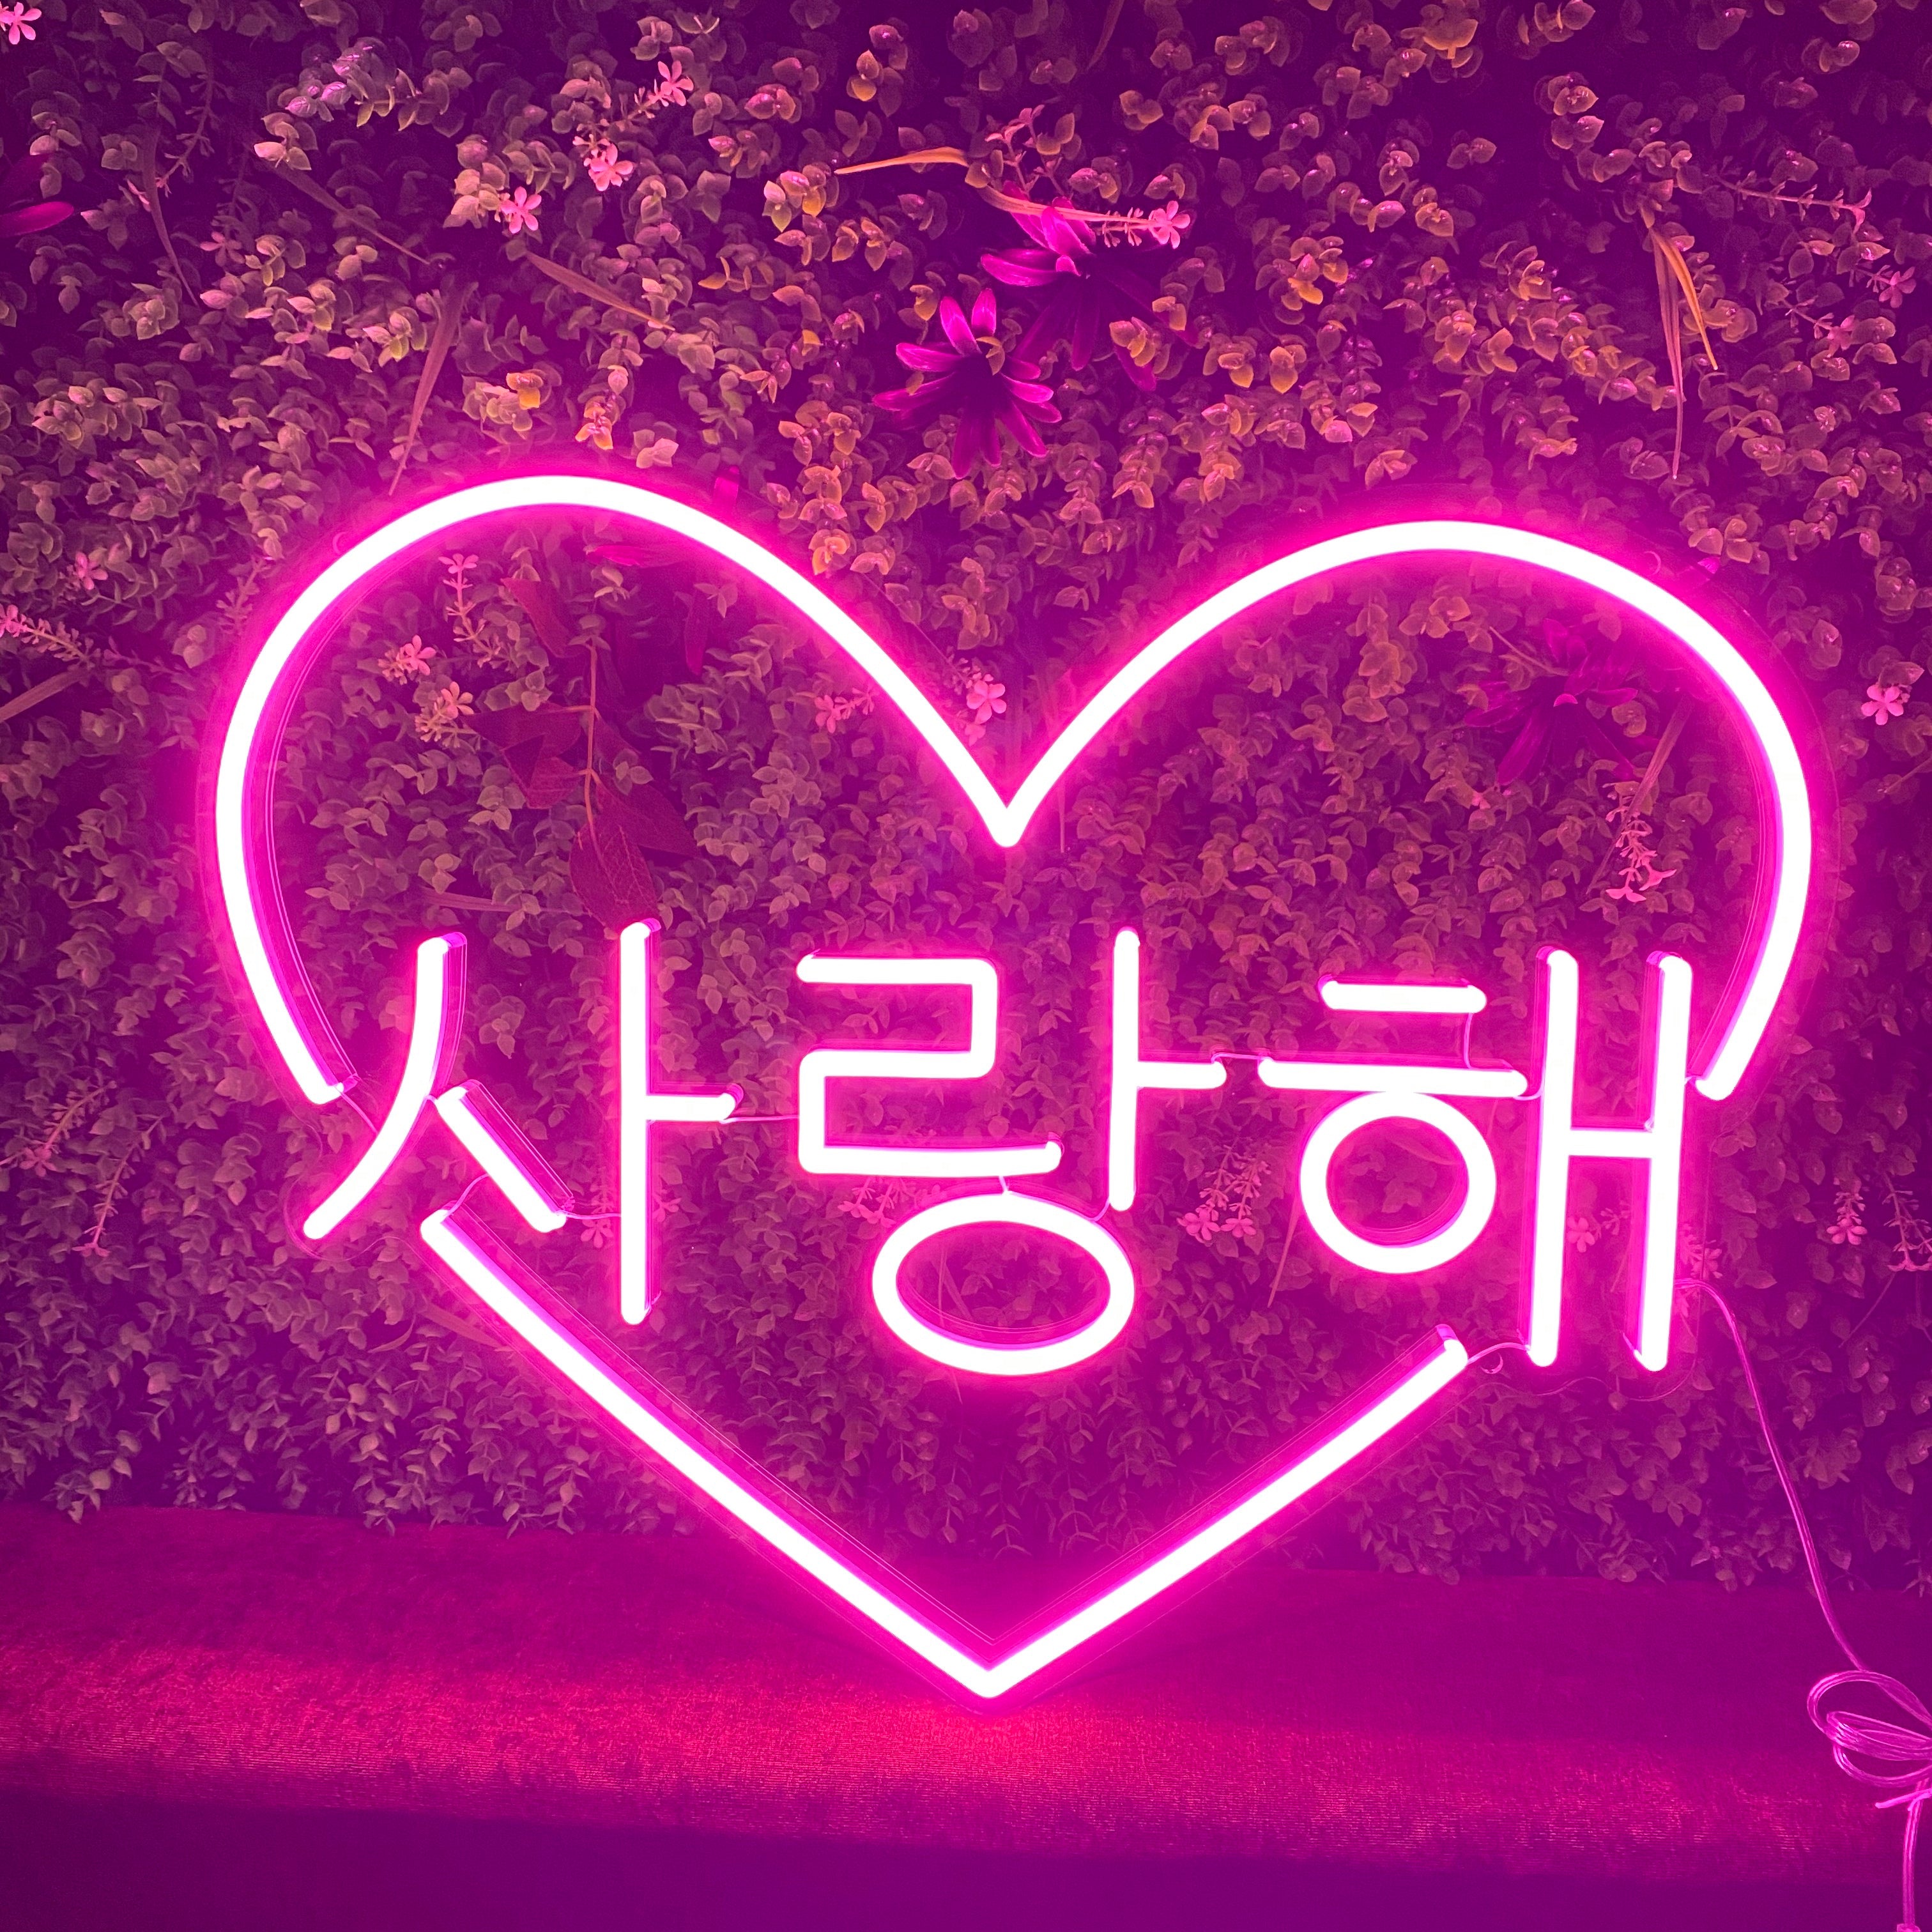 Korean lover sign